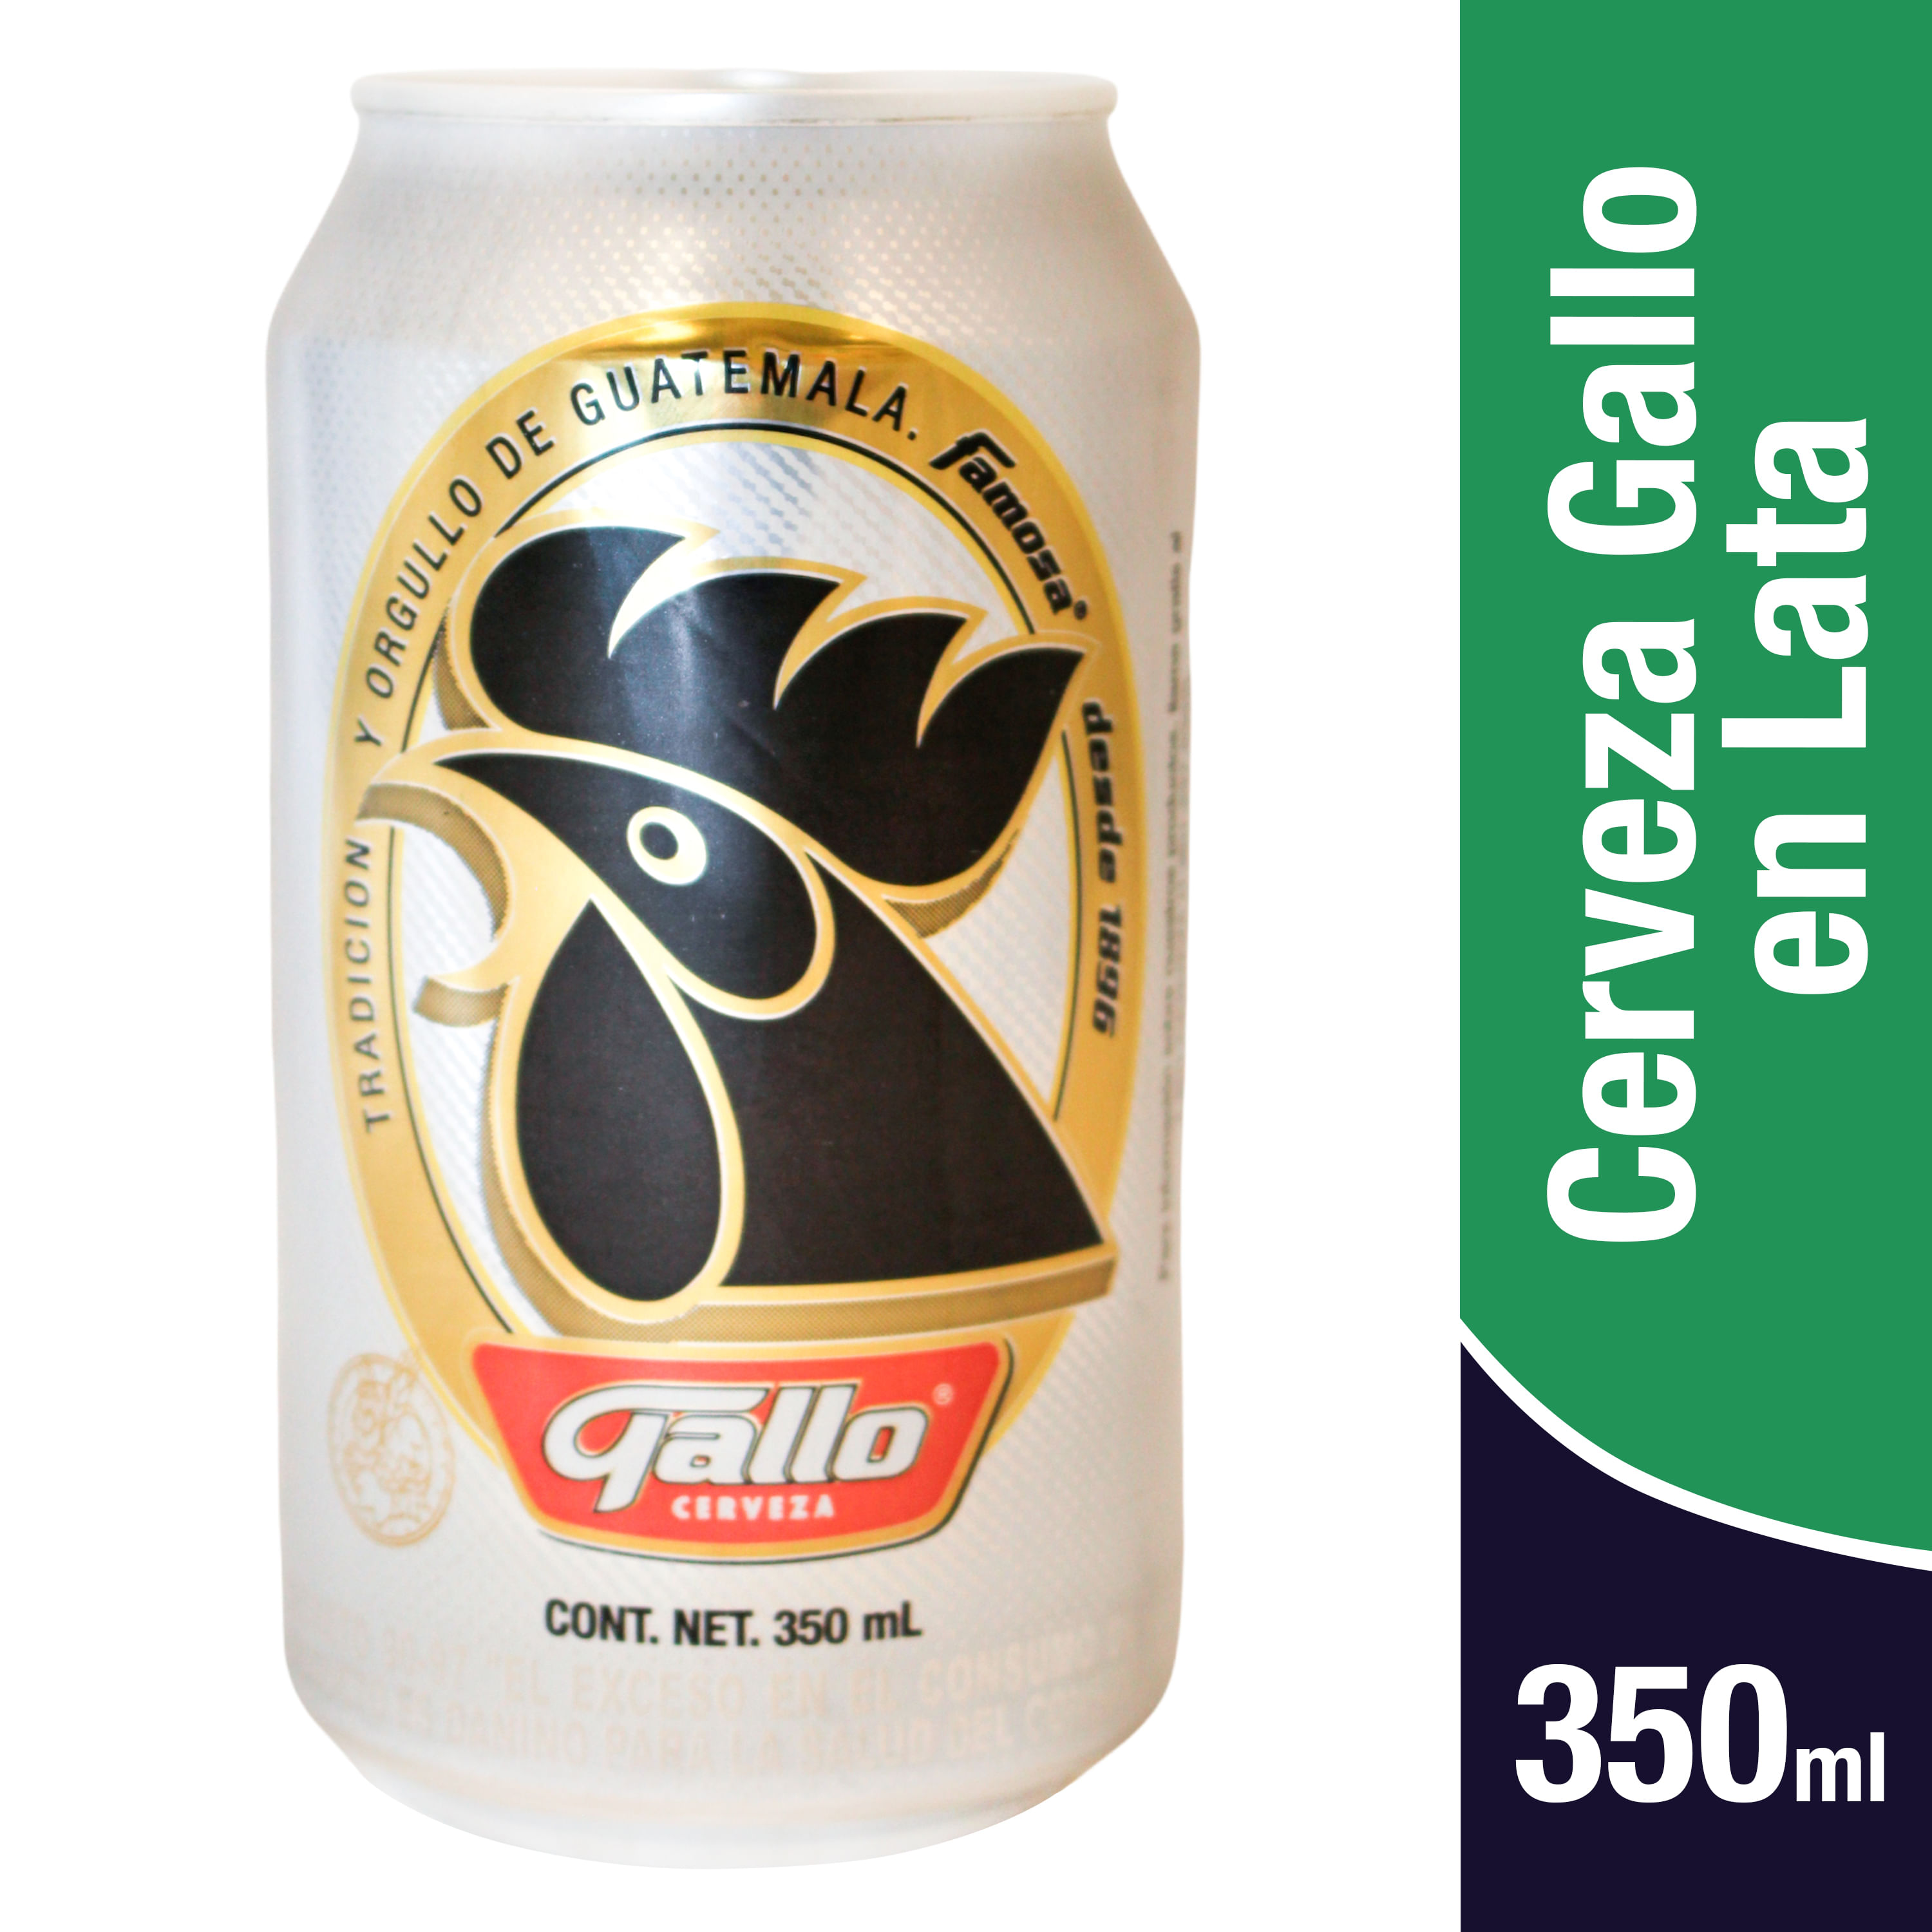 Comprar Cerveza Gallo Lata 350Ml | Walmart Guatemala - Maxi Despensa ...